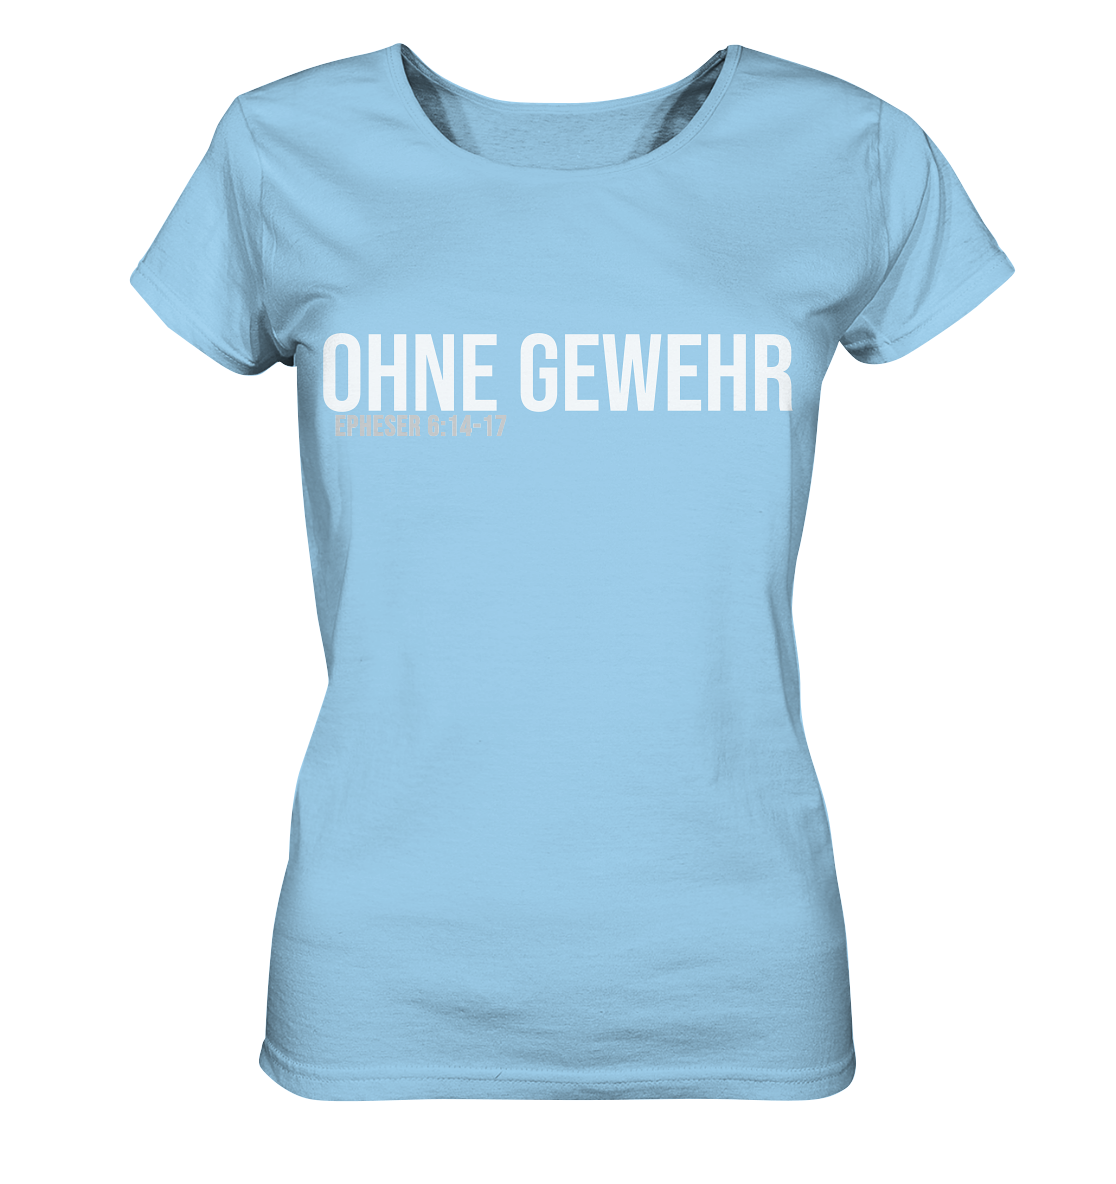 OHNE GEWEHR - weiß auf bunt - Ladies Organic Shirt